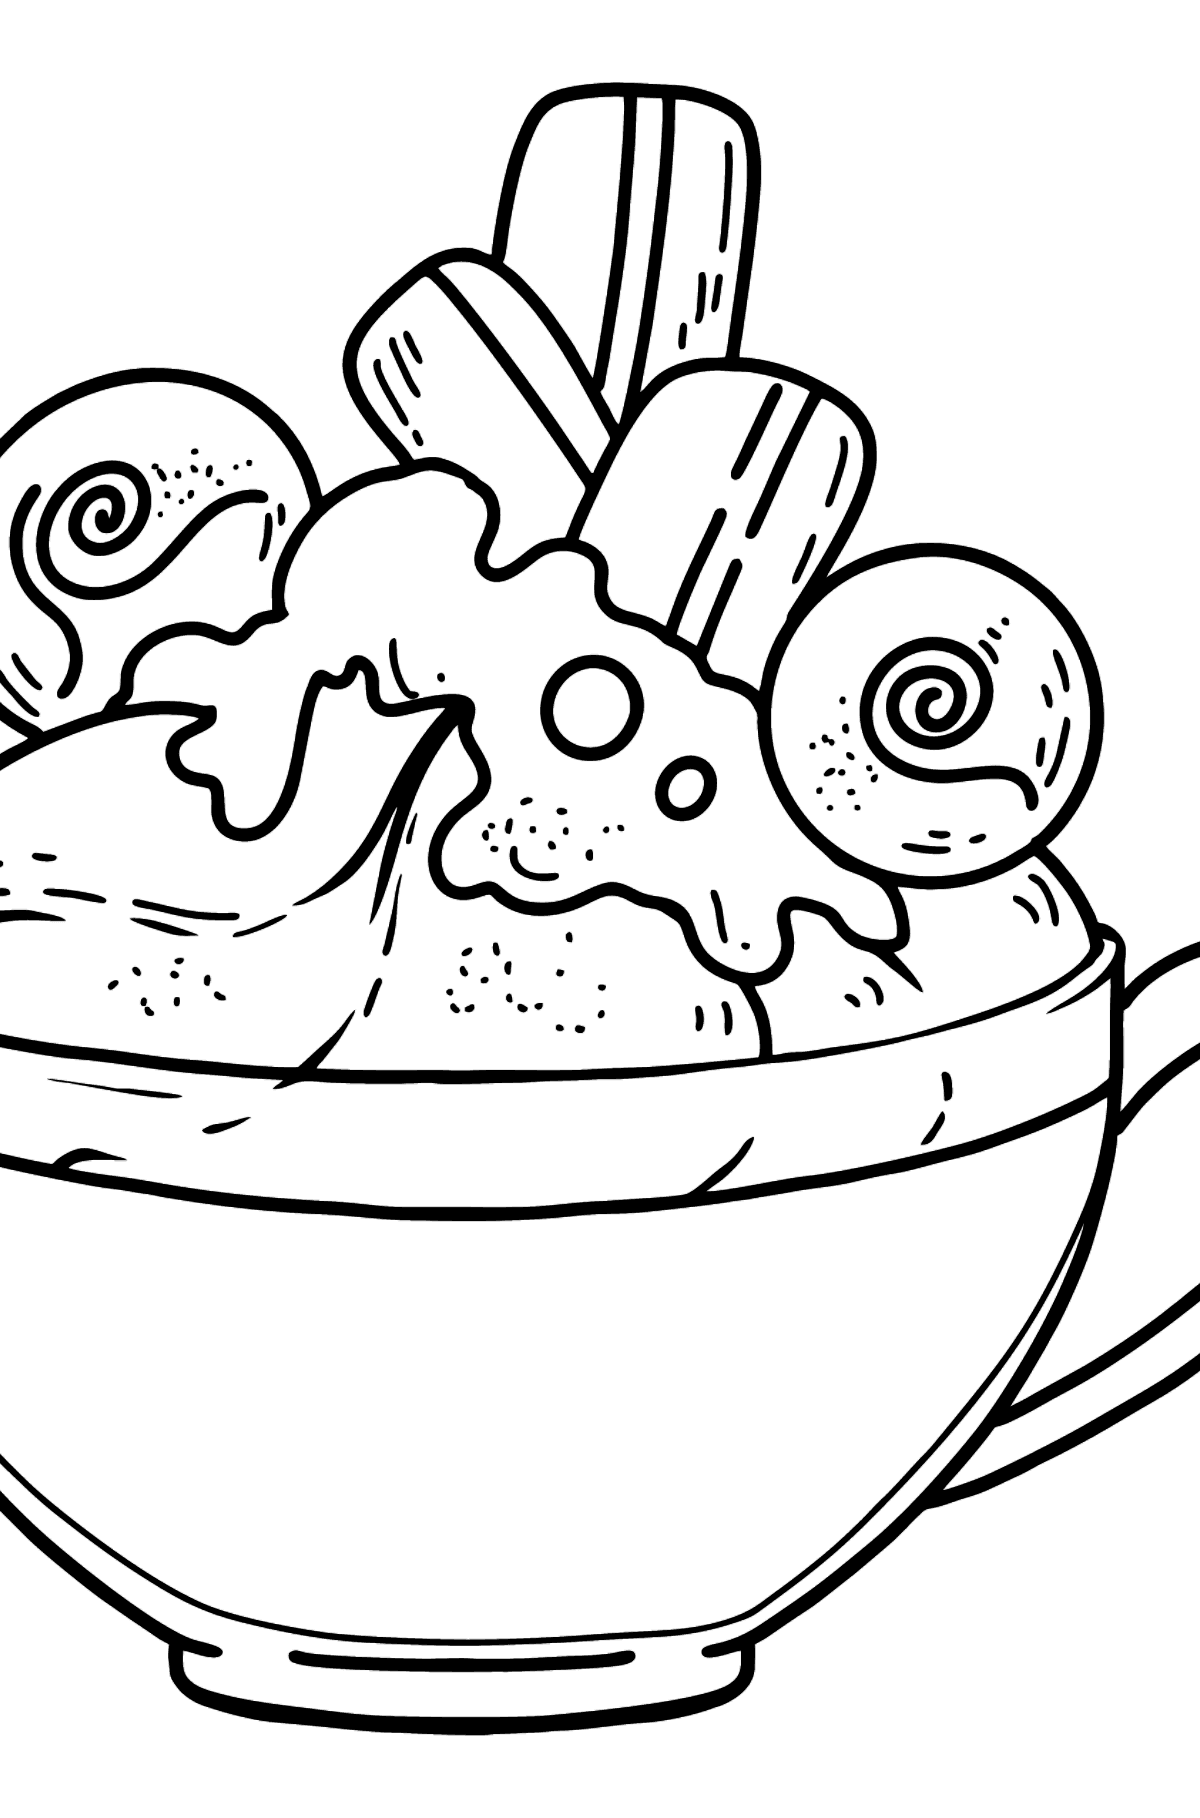 Desenho da xícara de café para colorir - Imagens para Colorir para Crianças